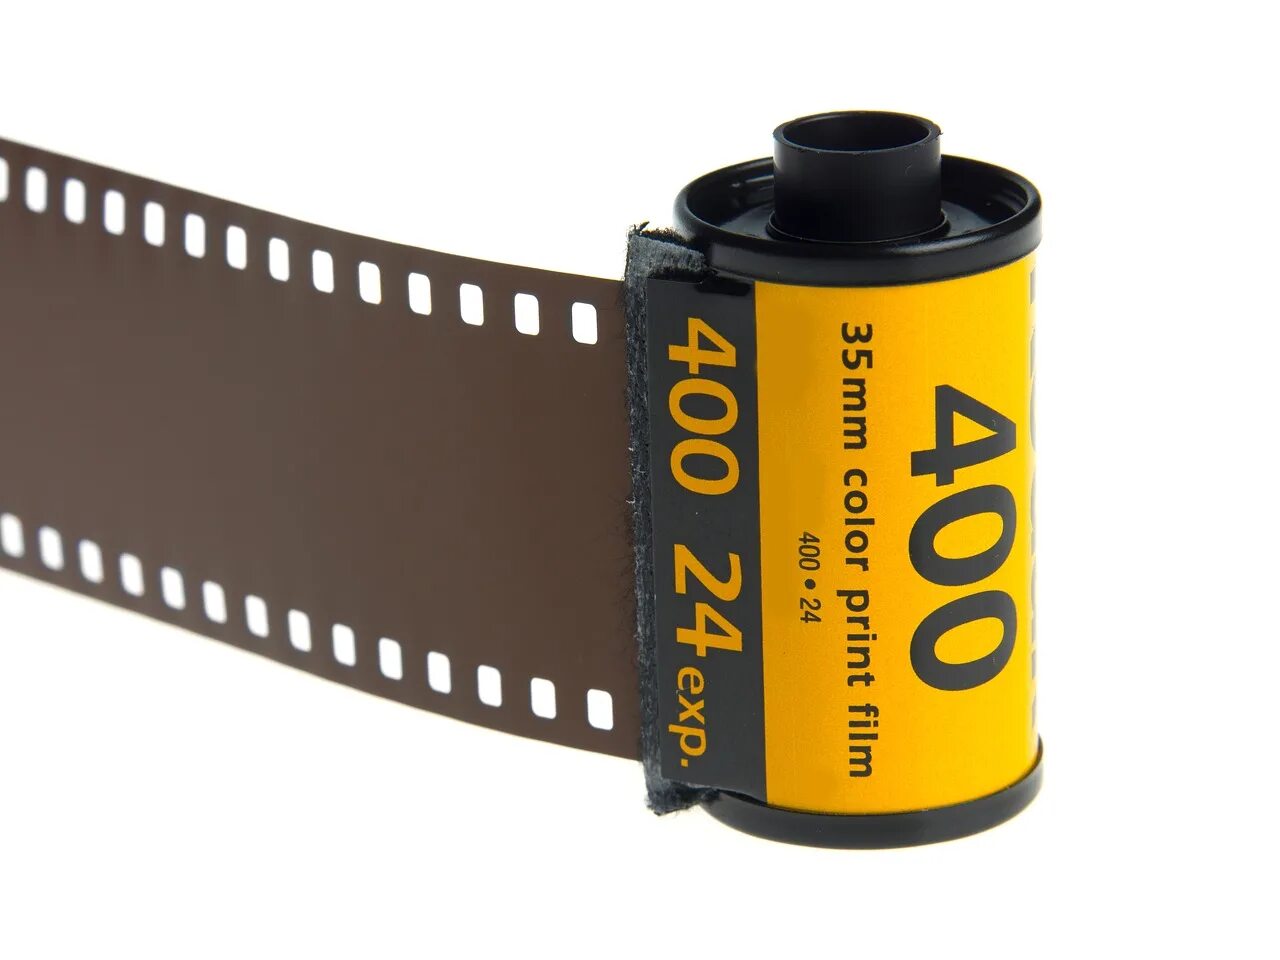 0 3 0 35 мм. Фотопленка Кодак 35 мм 24 кадра. 35mm кинопленка. Плёнка для фотоаппарата Kodak 35мм. Фотоплёнка 35 мм.